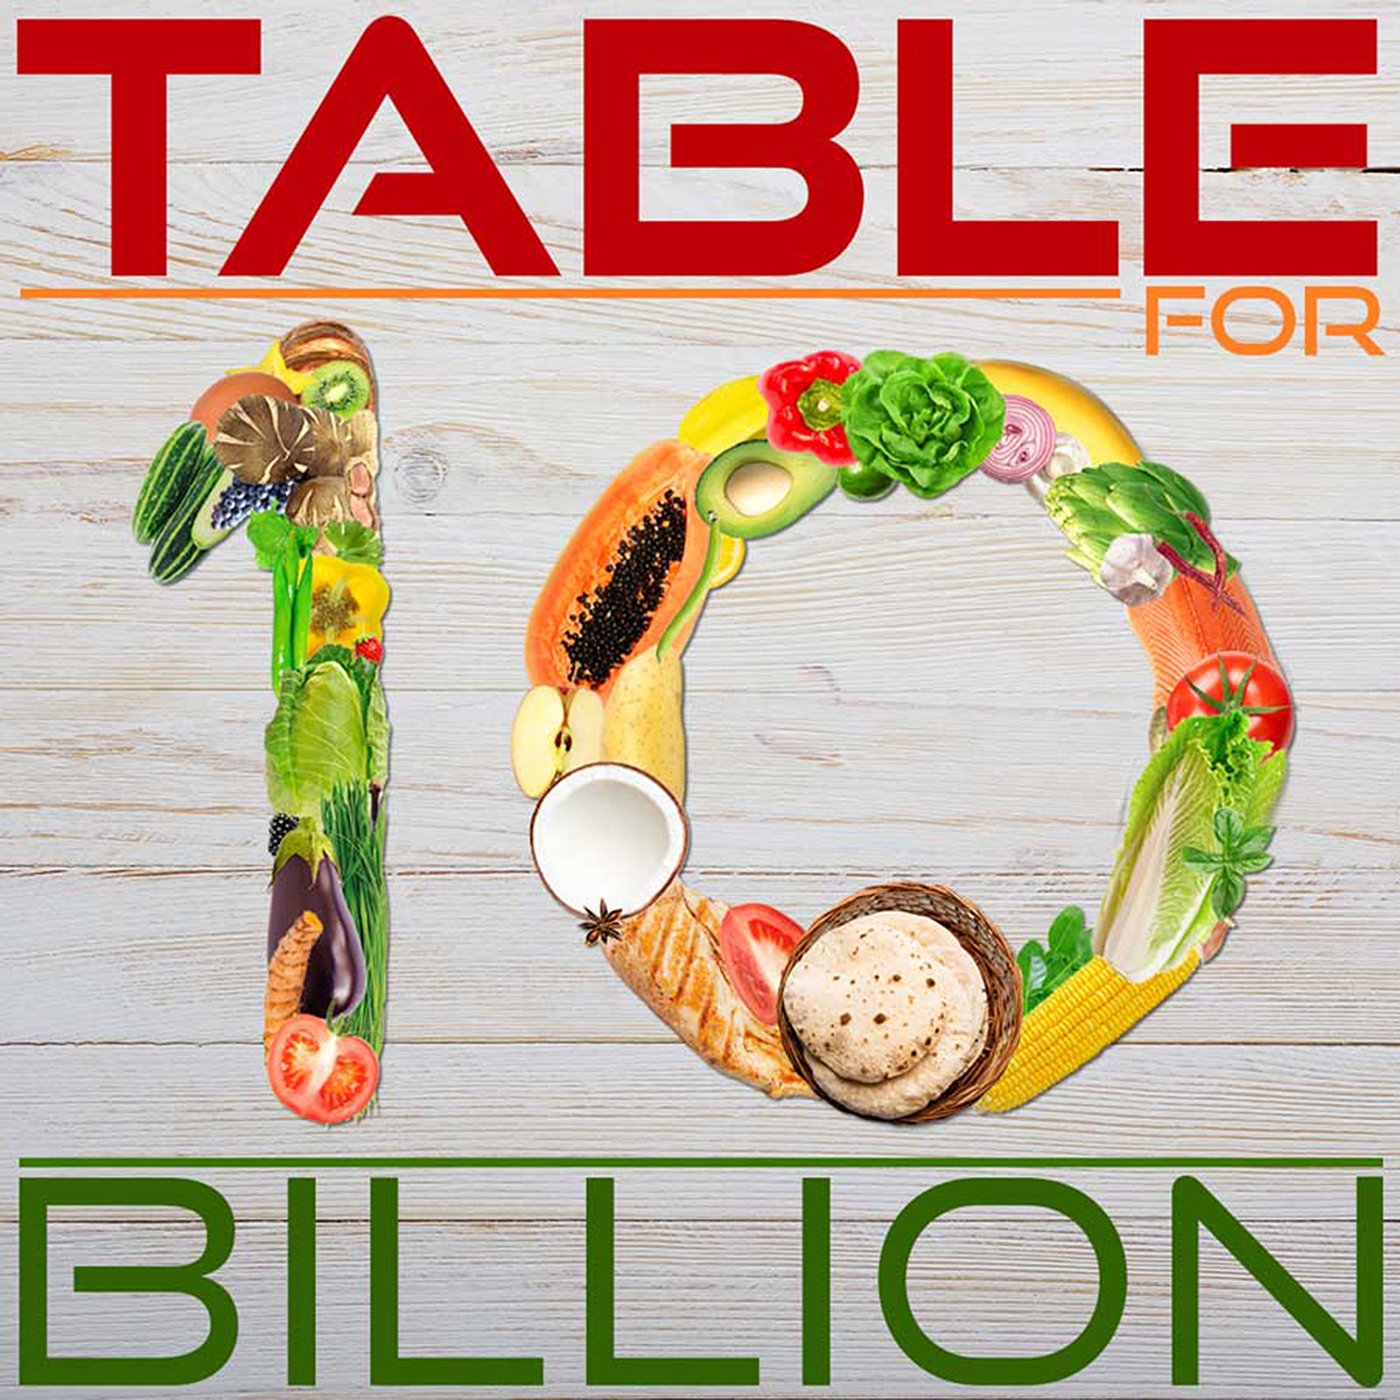 Artwork for podcast Table for 10 Billion